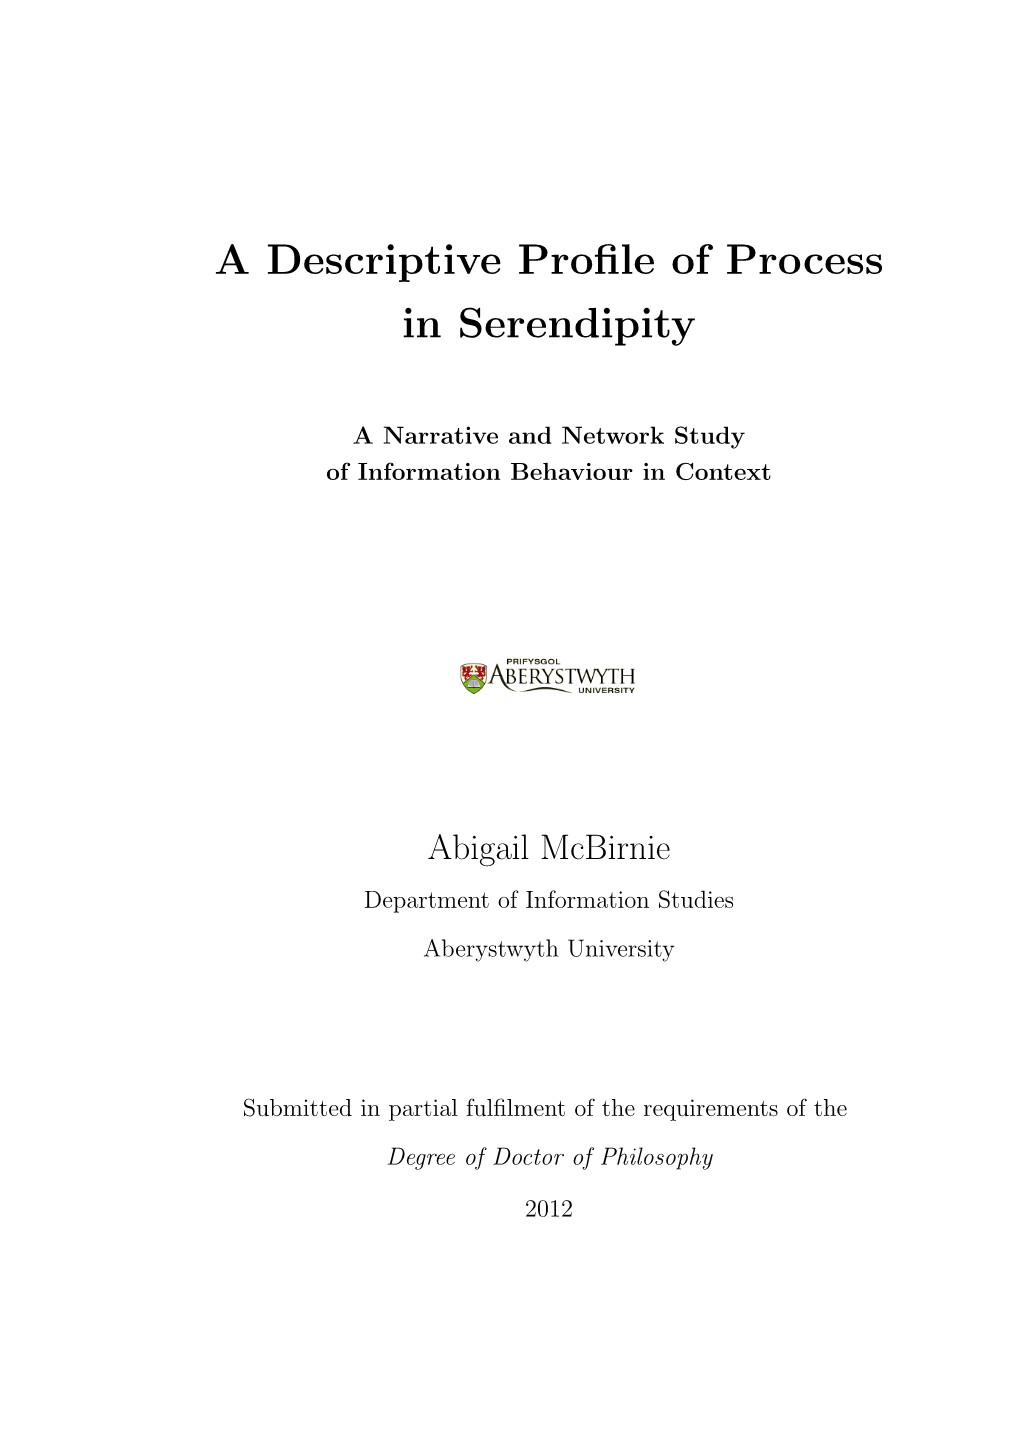 A Descriptive Profile of Process in Serendipity